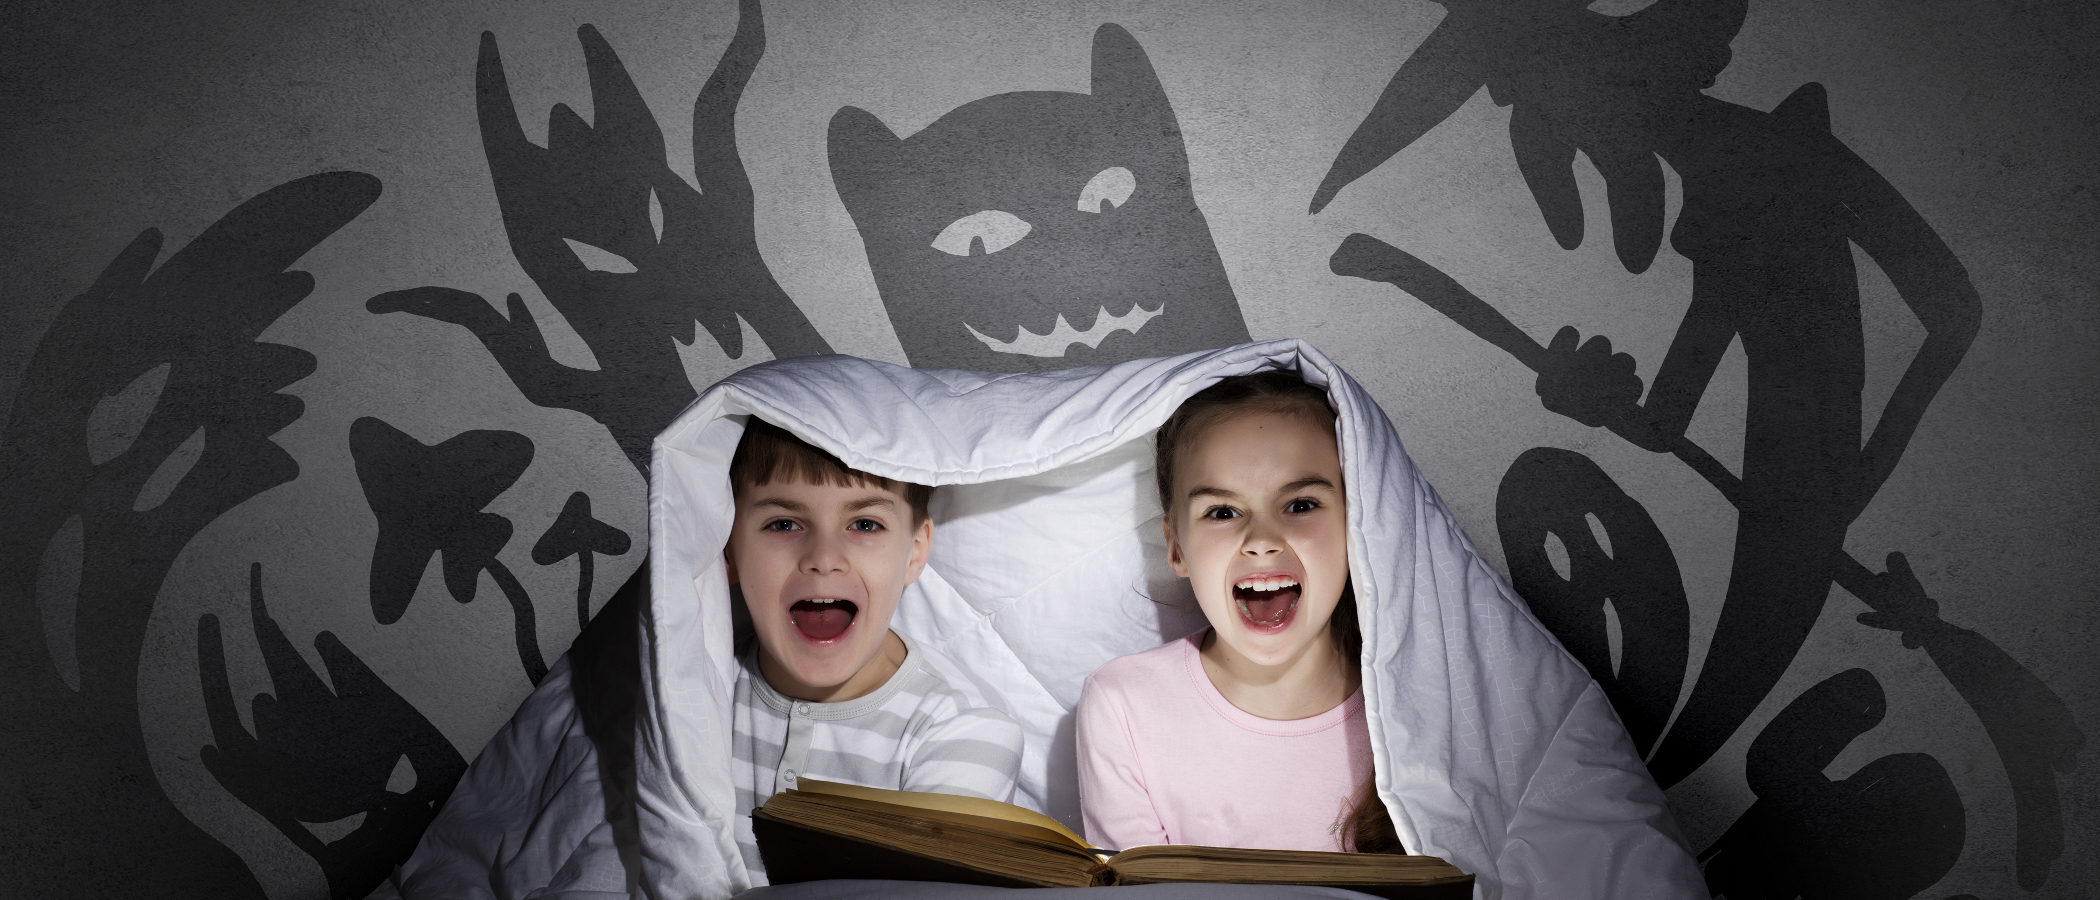 Cuentos de terror para contar a los niños en Halloween